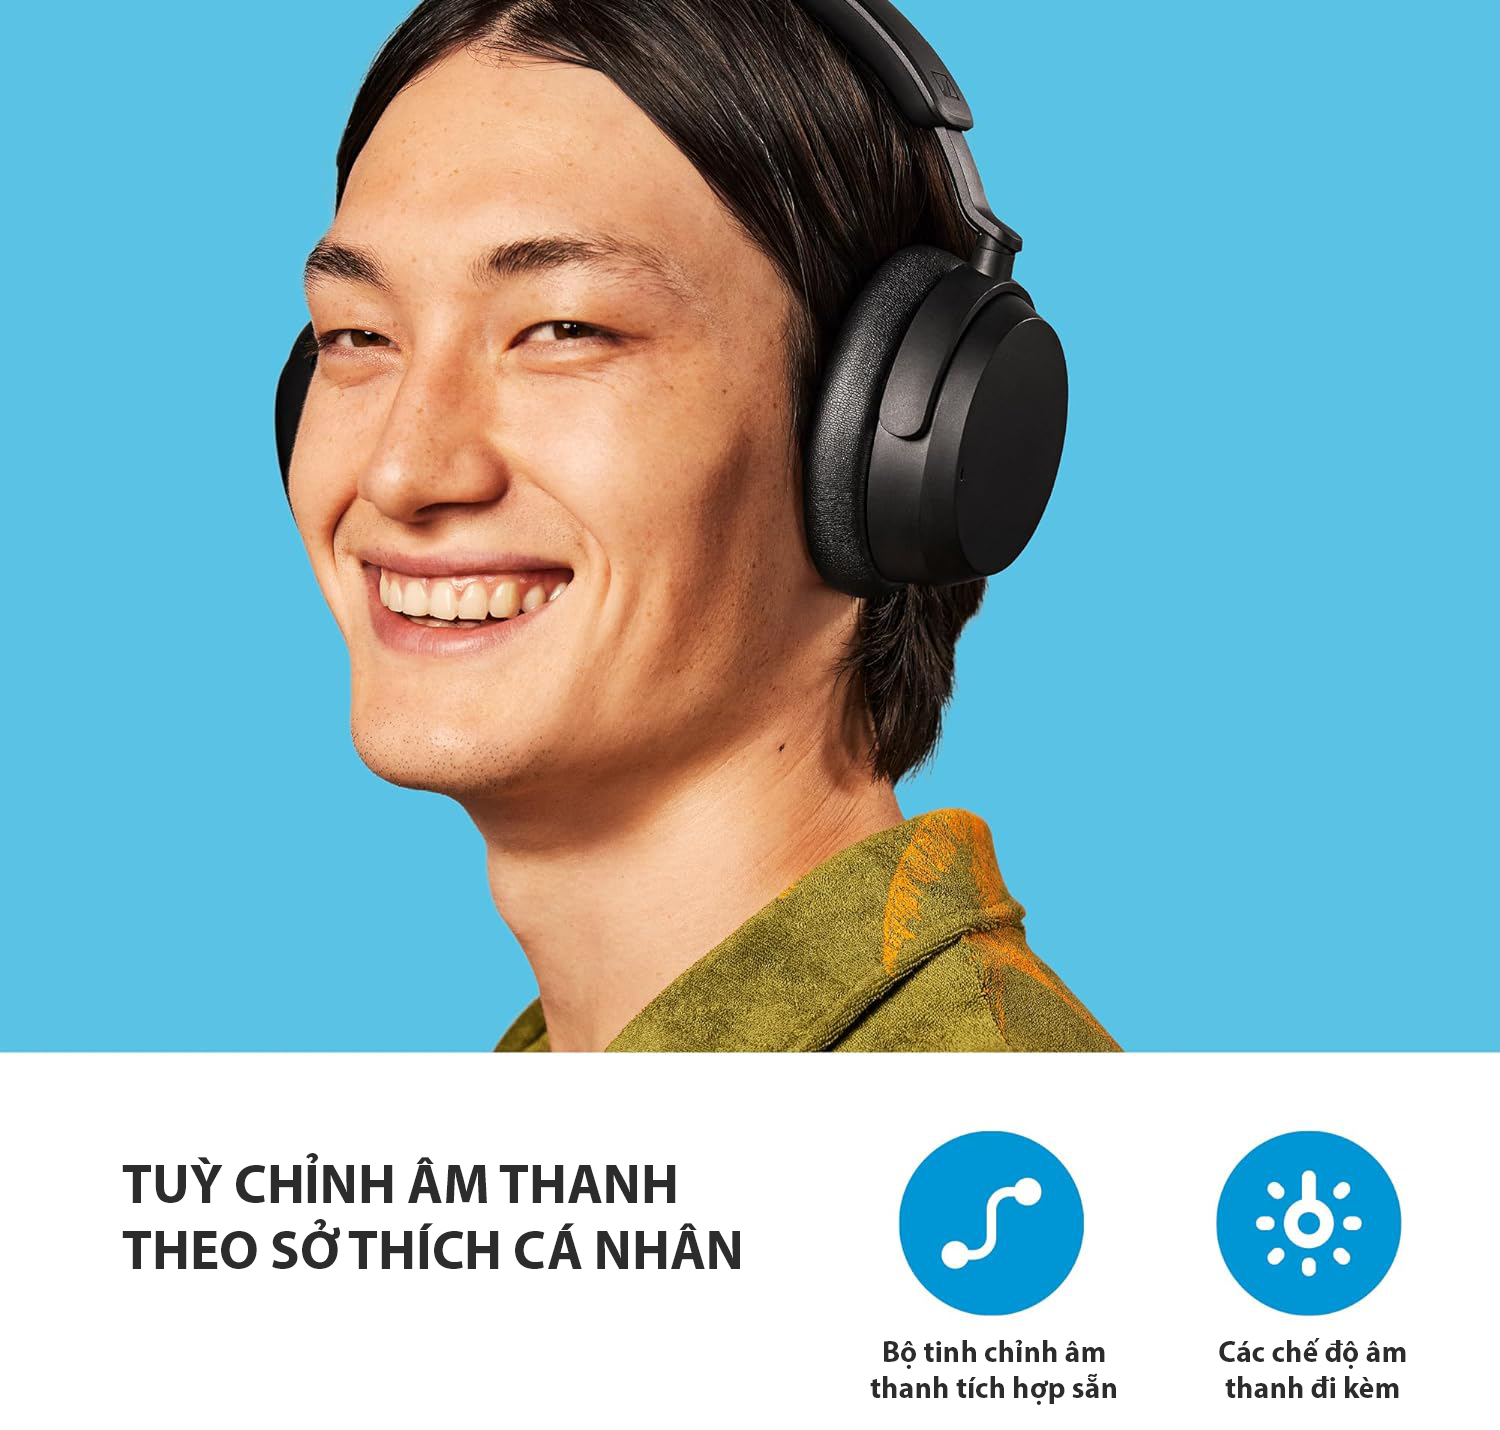 Tai nghe không dây SENNHEISER Accentum Wireless thương hiệu từ Đức - Hàng chính hãng